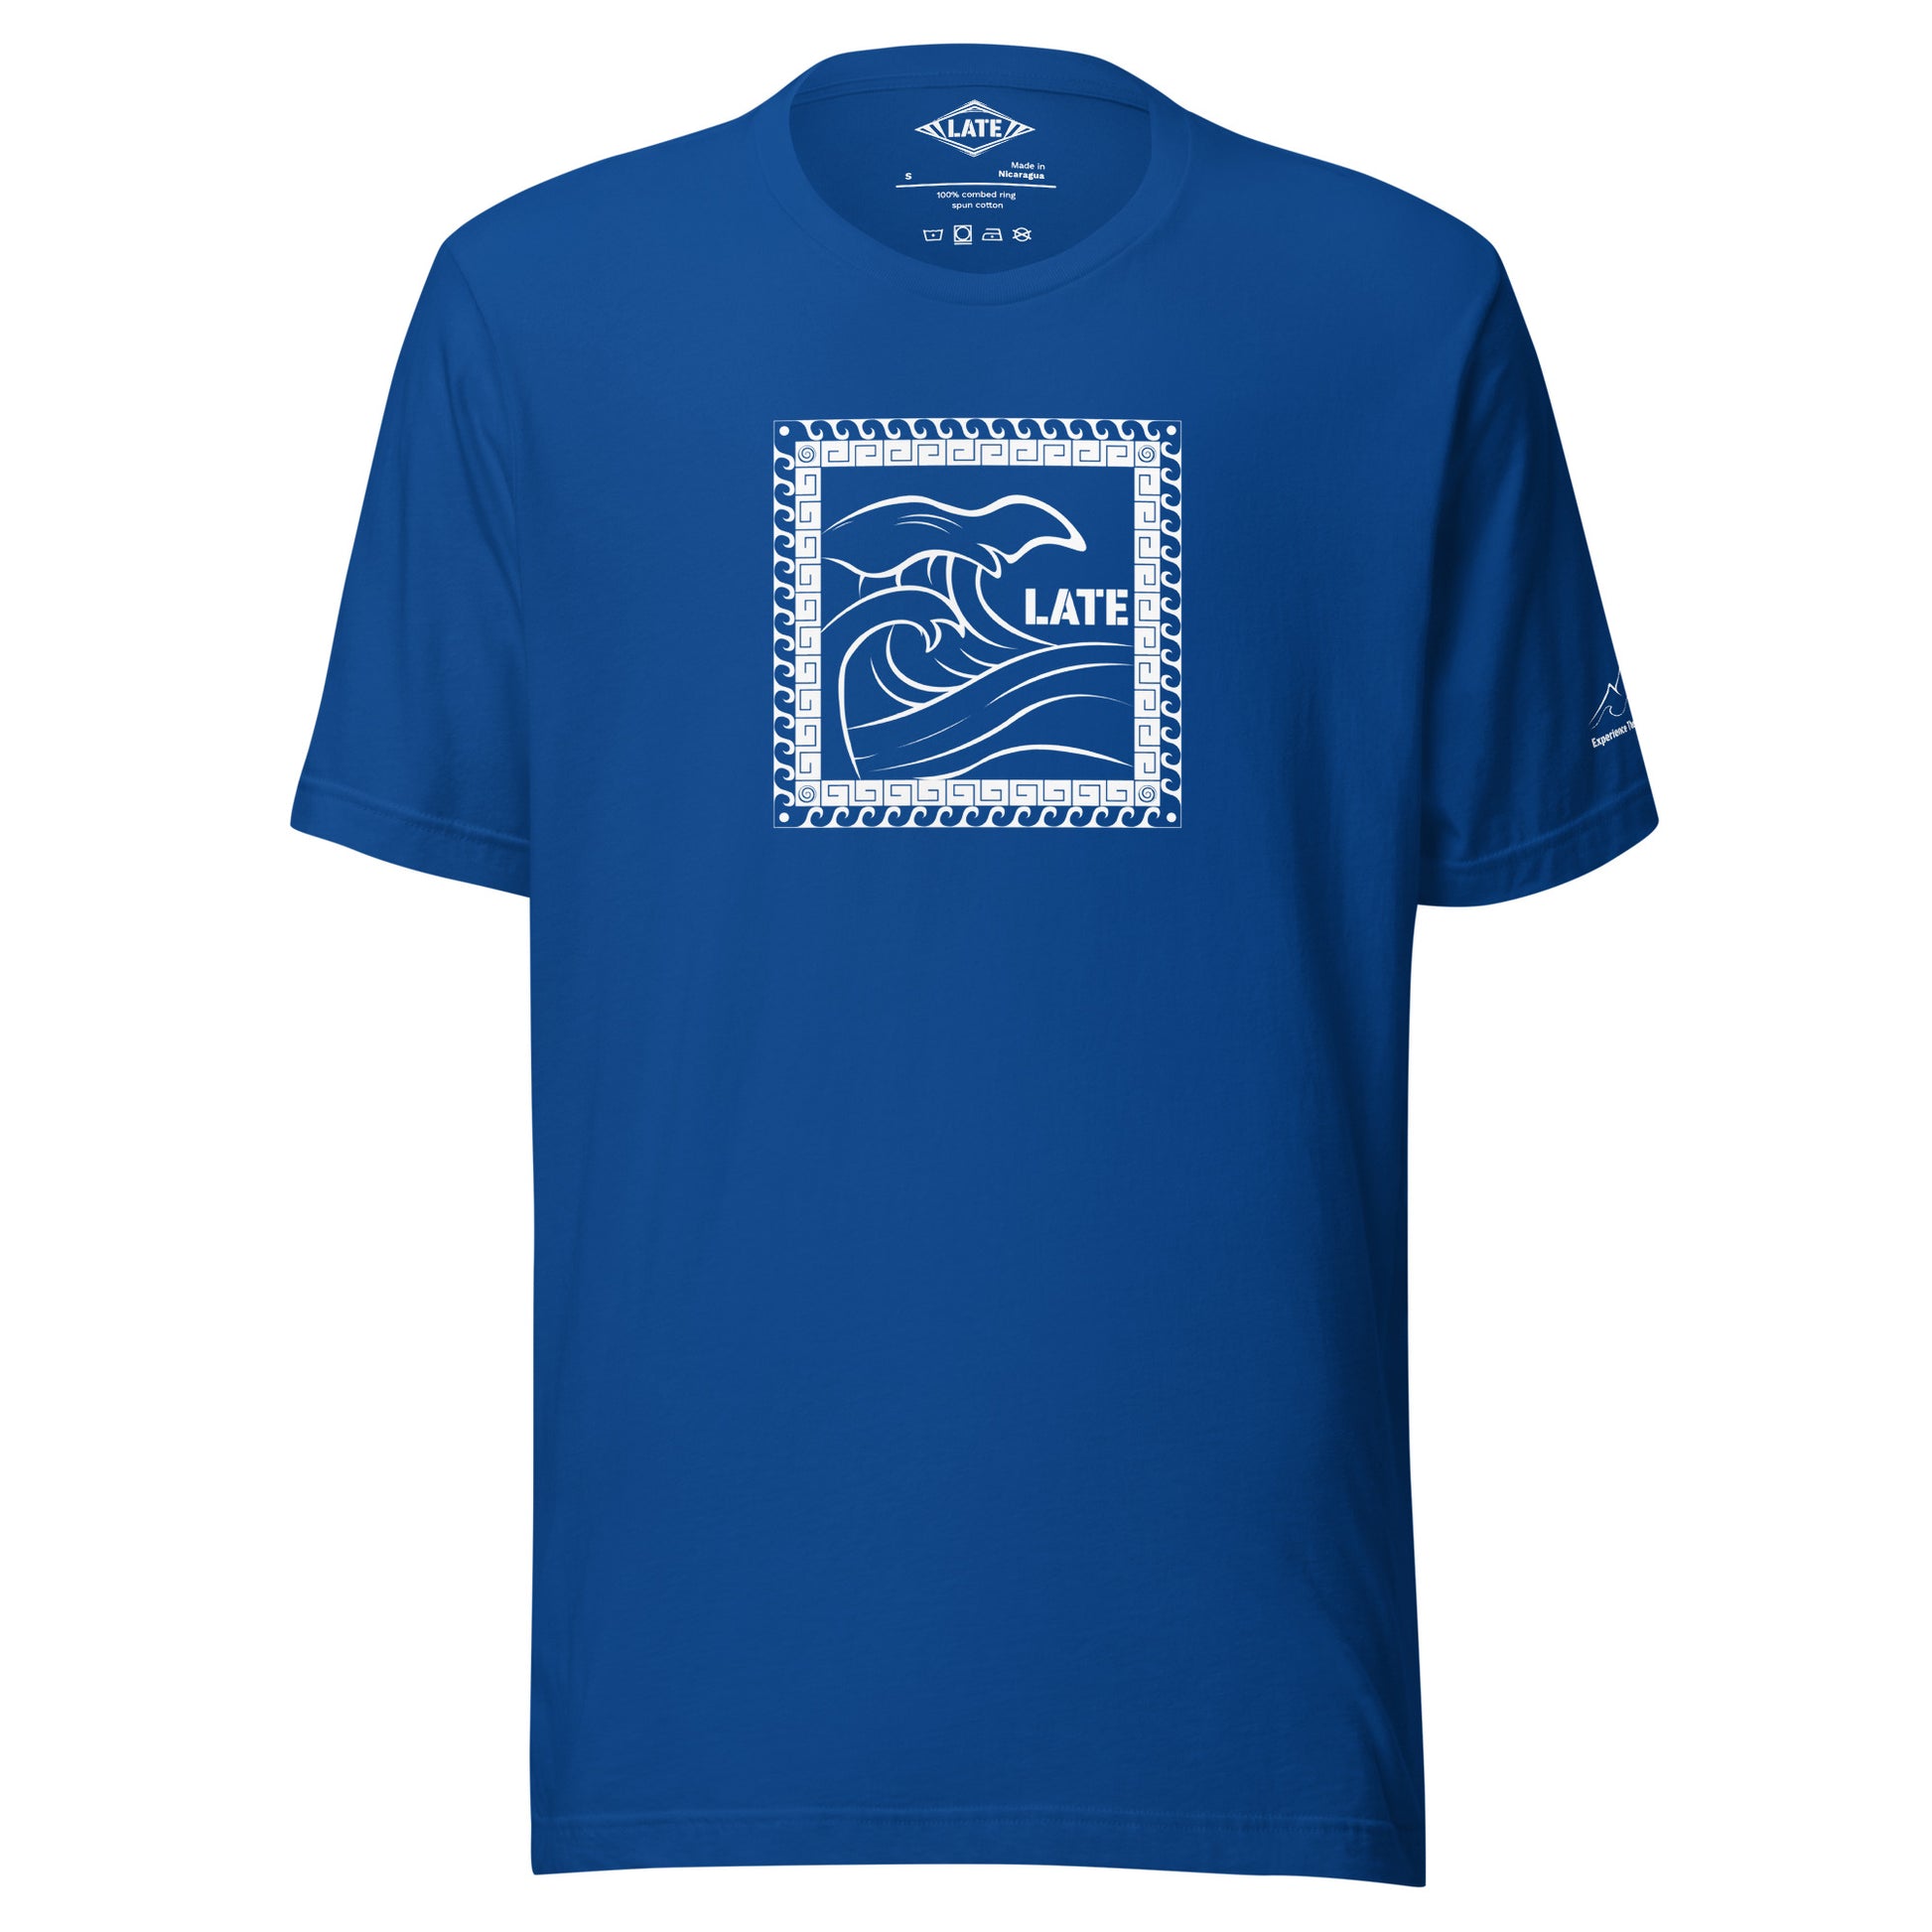 T-Shirt Tricky Wave design vague japonnaise et contour maori texte Late marque de vetement de surf. Tshirt unisex couleur bleu royal